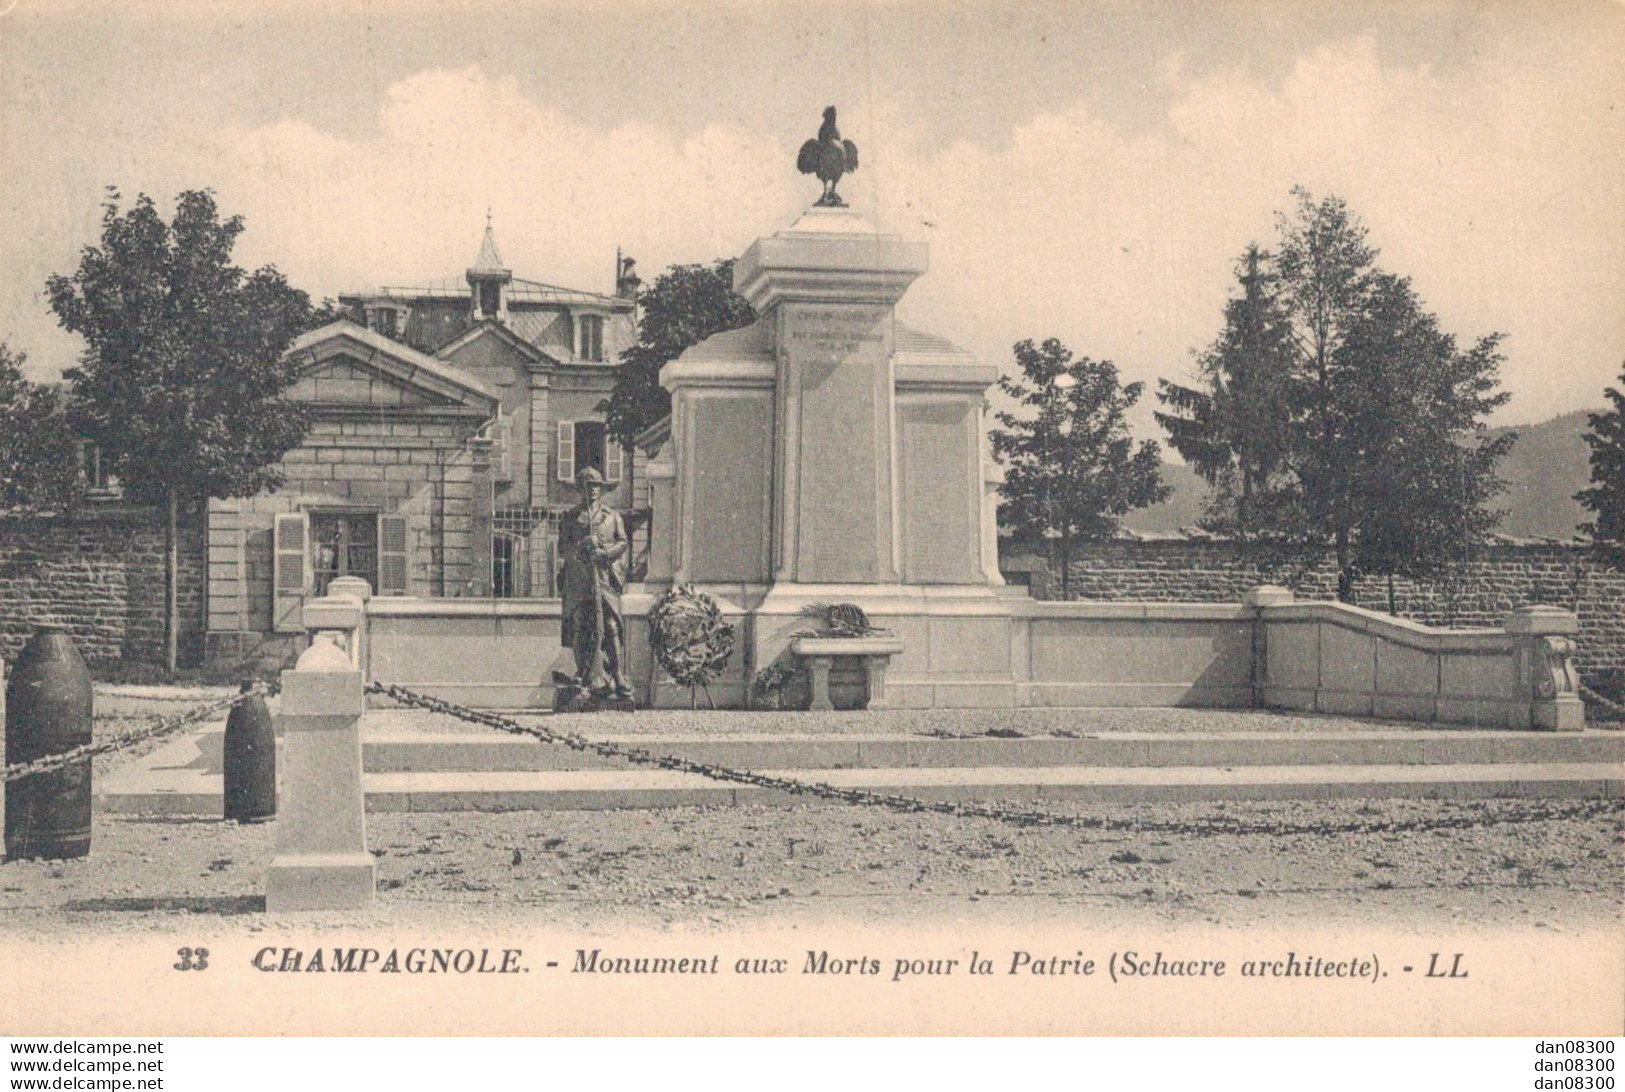 39 CHAMPAGNOLE MONUMENT AUX MORTS POUR LA PATRIE - Monuments Aux Morts